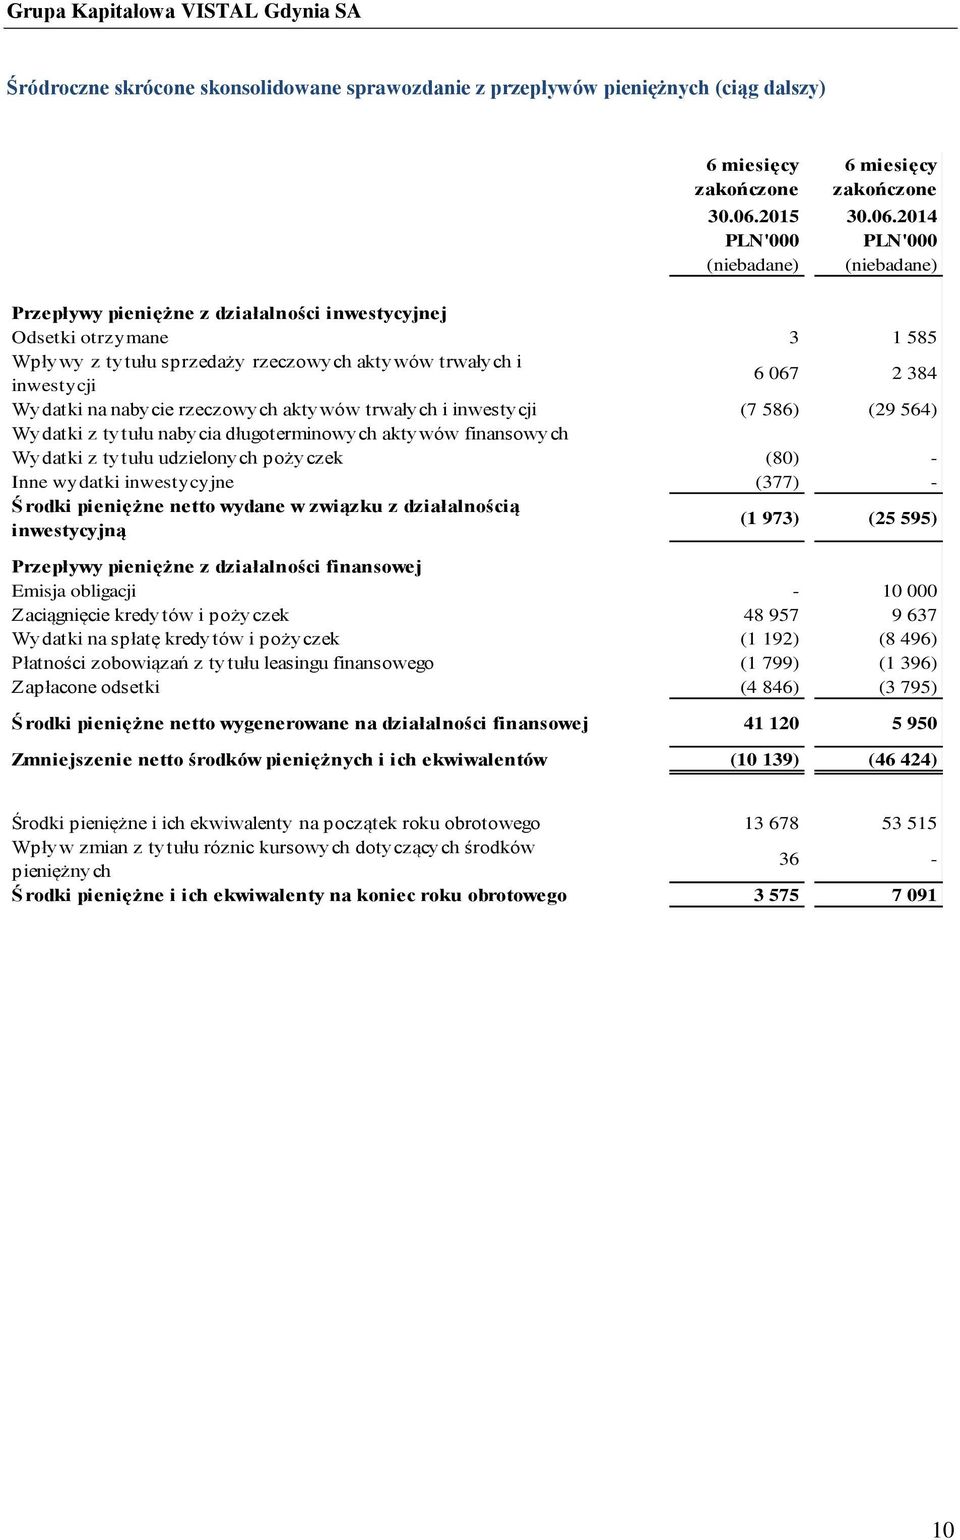 2014 PLN'000 PLN'000 (niebadane) (niebadane) Przepływy pieniężne z działalności inwestycyjnej Odsetki otrzymane 3 1 585 Wpływy z tytułu sprzedaży rzeczowych aktywów trwałych i inwestycji 6 067 2 384